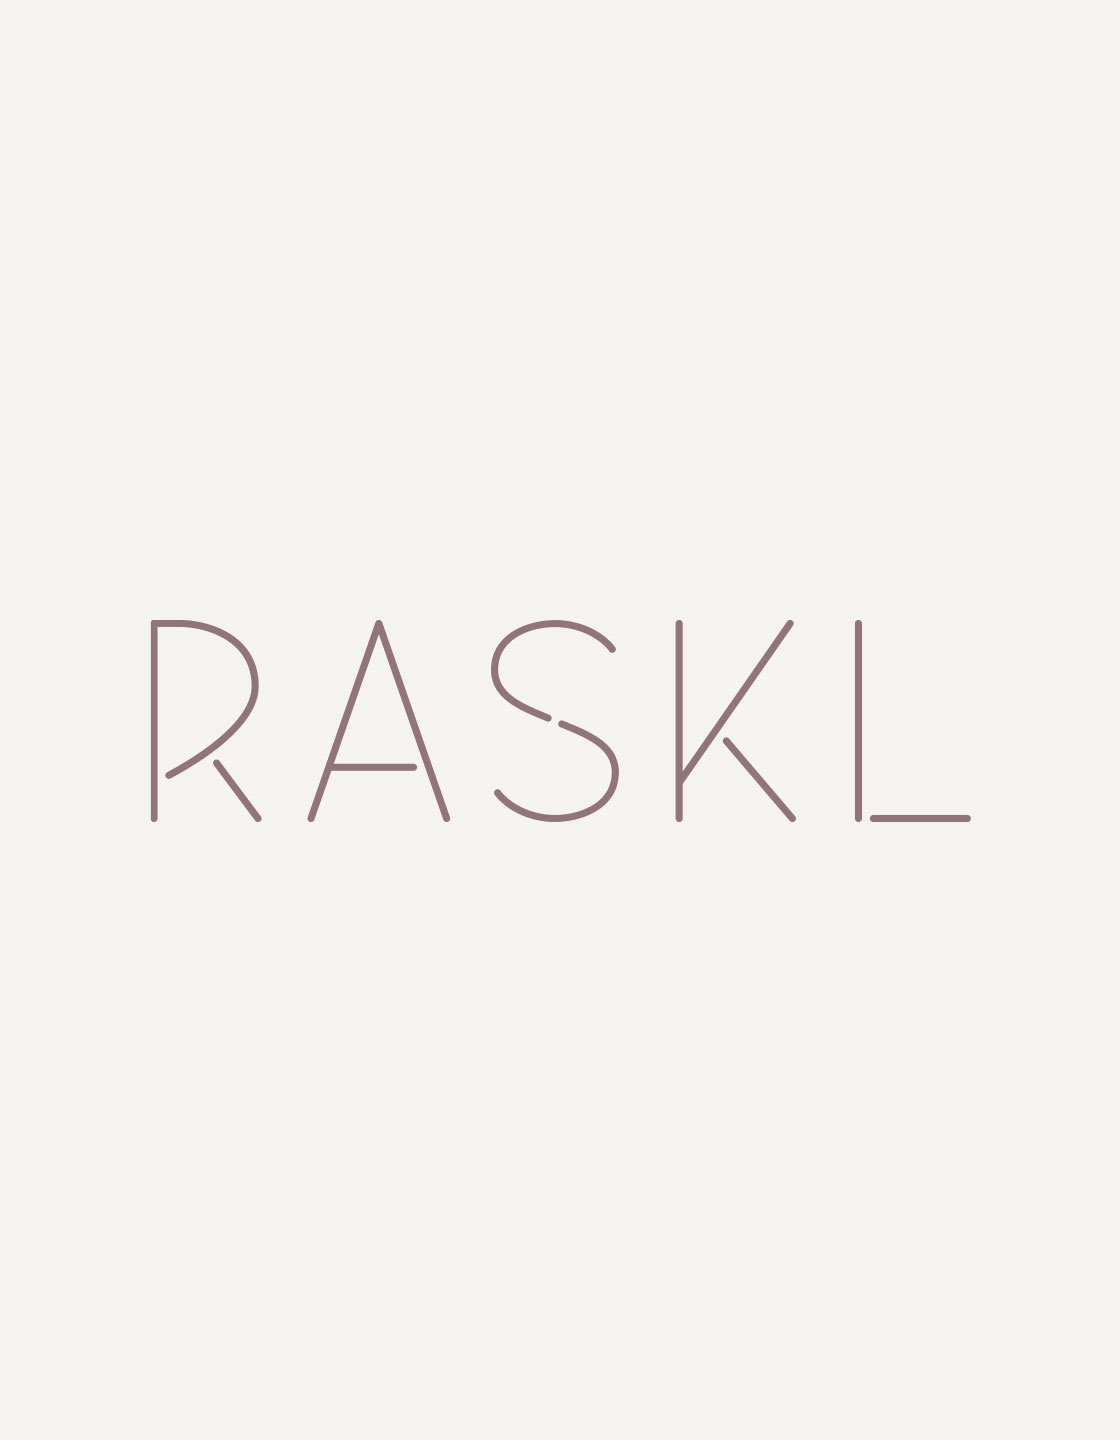 RASKL Brand Mark